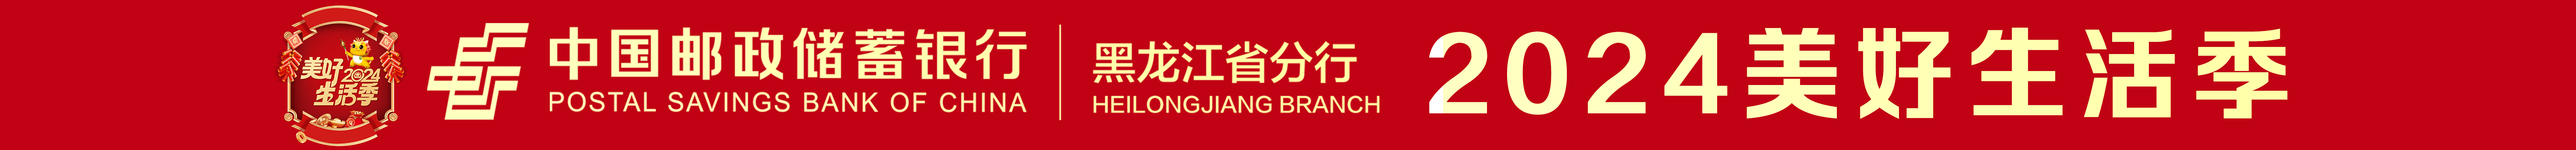 邮储银行黑龙江省分行实现全省系统内首笔绿色贸融业务落地